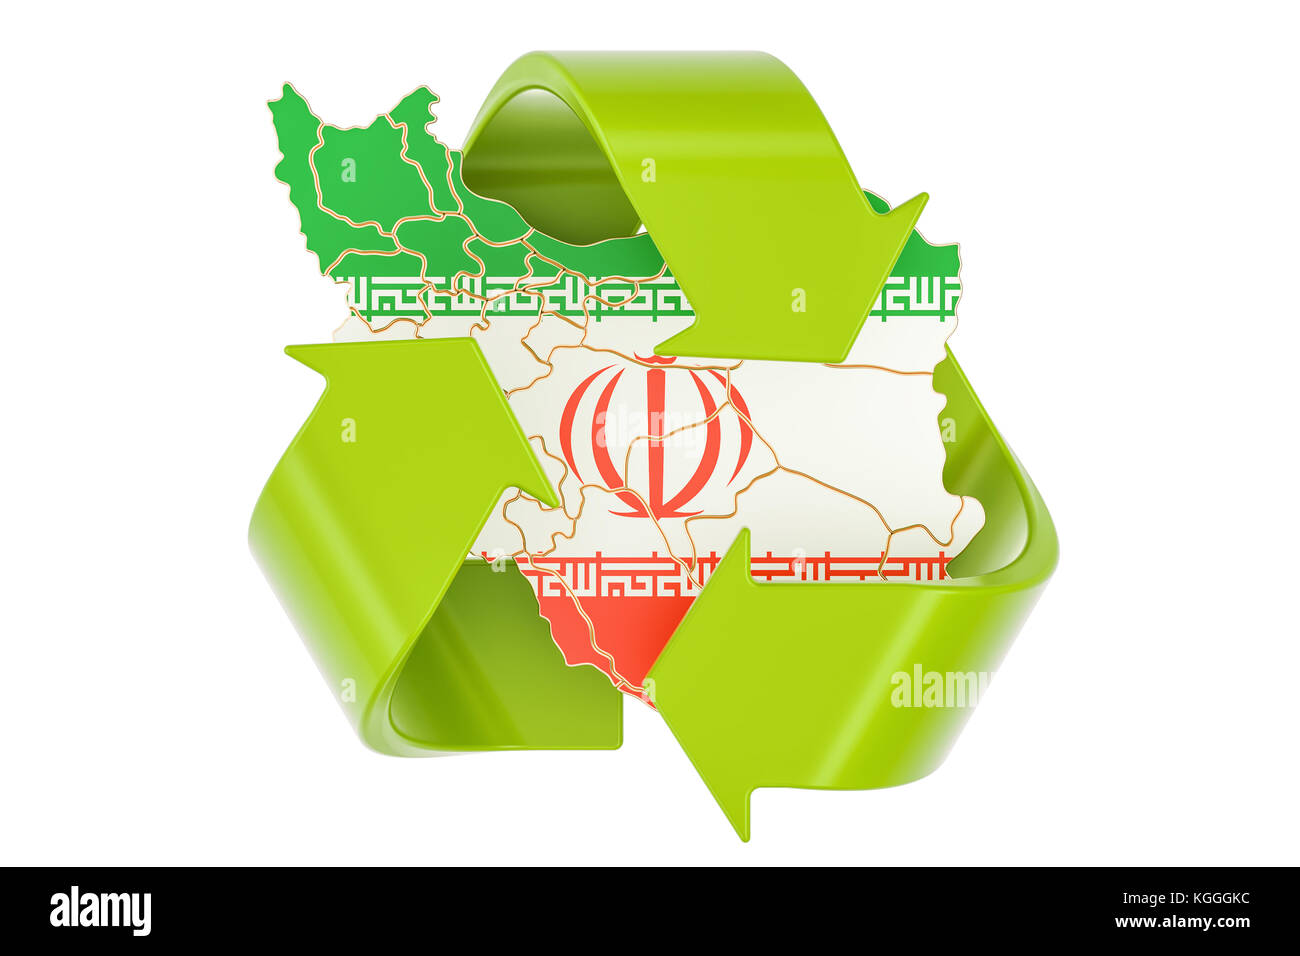 Recycling im Iran Konzept, 3D-Rendering auf weißem Hintergrund Stockfoto